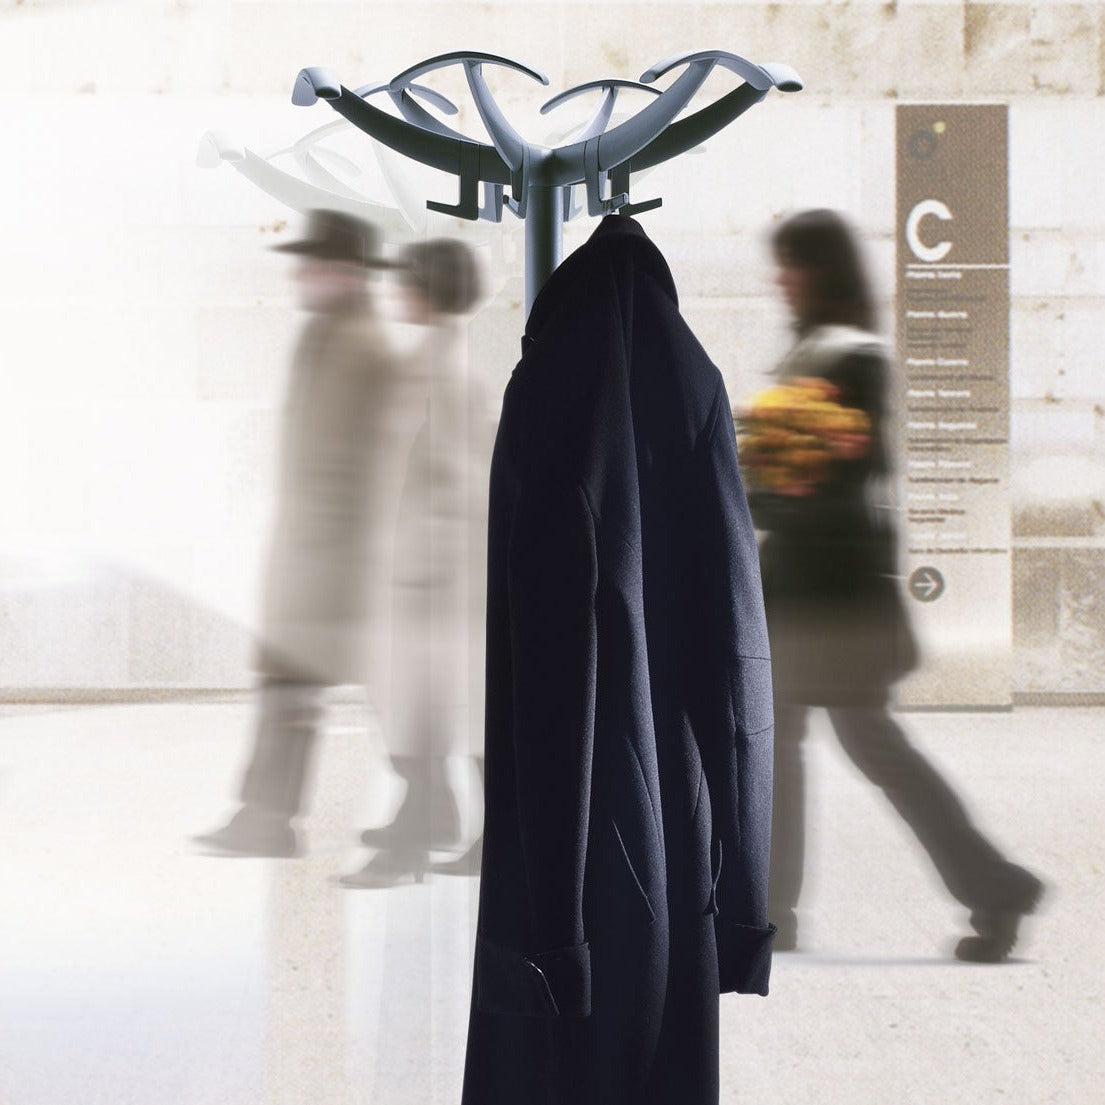 Rexite Doppiopetto Coat Stand w Umbrella Holder